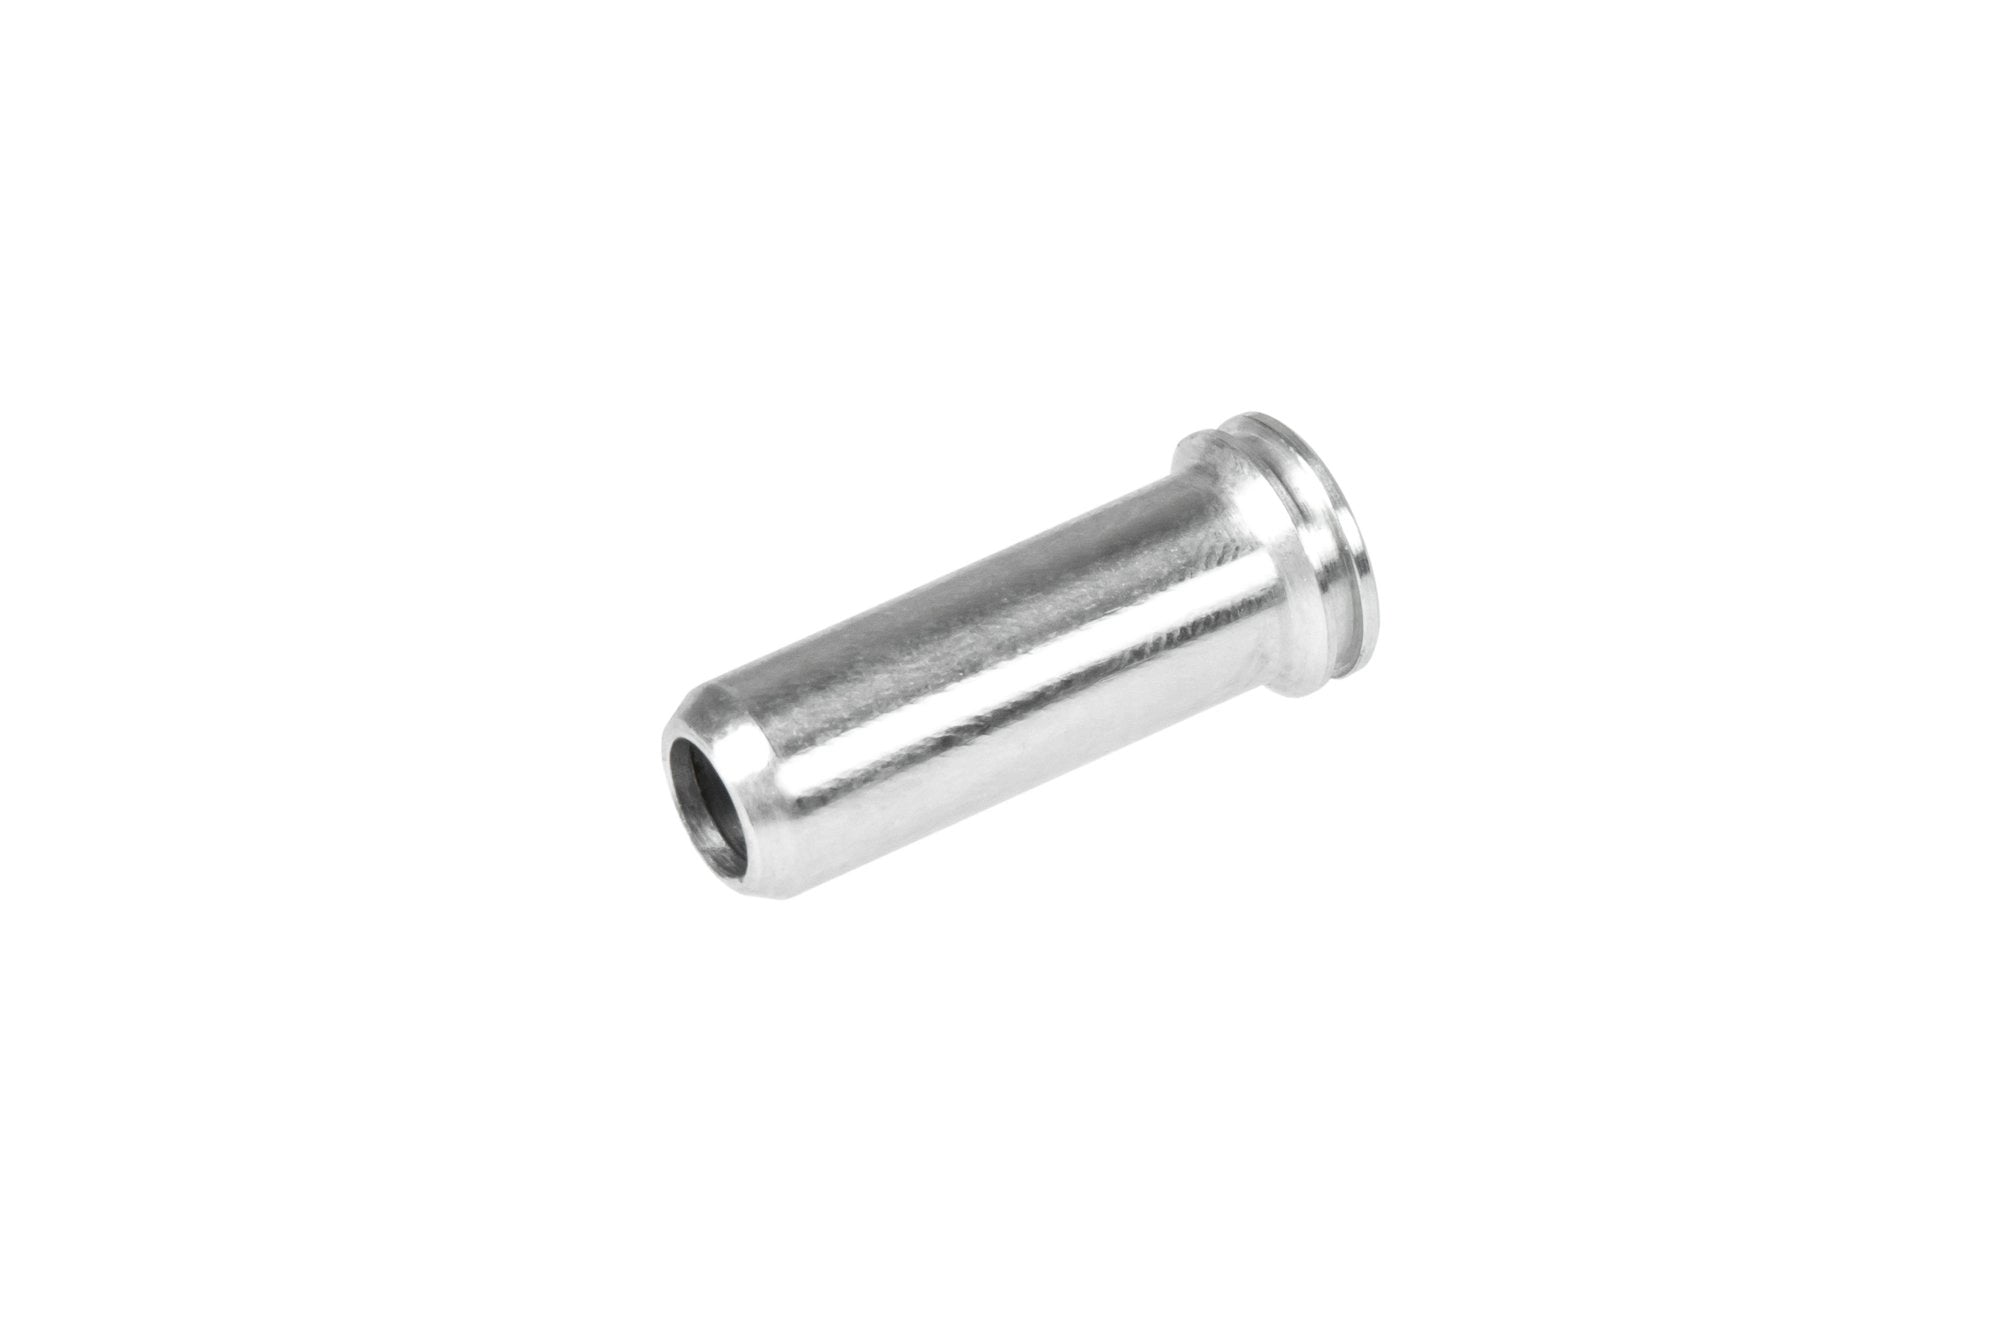 Aluminum CNC Nozzle - 24 mm